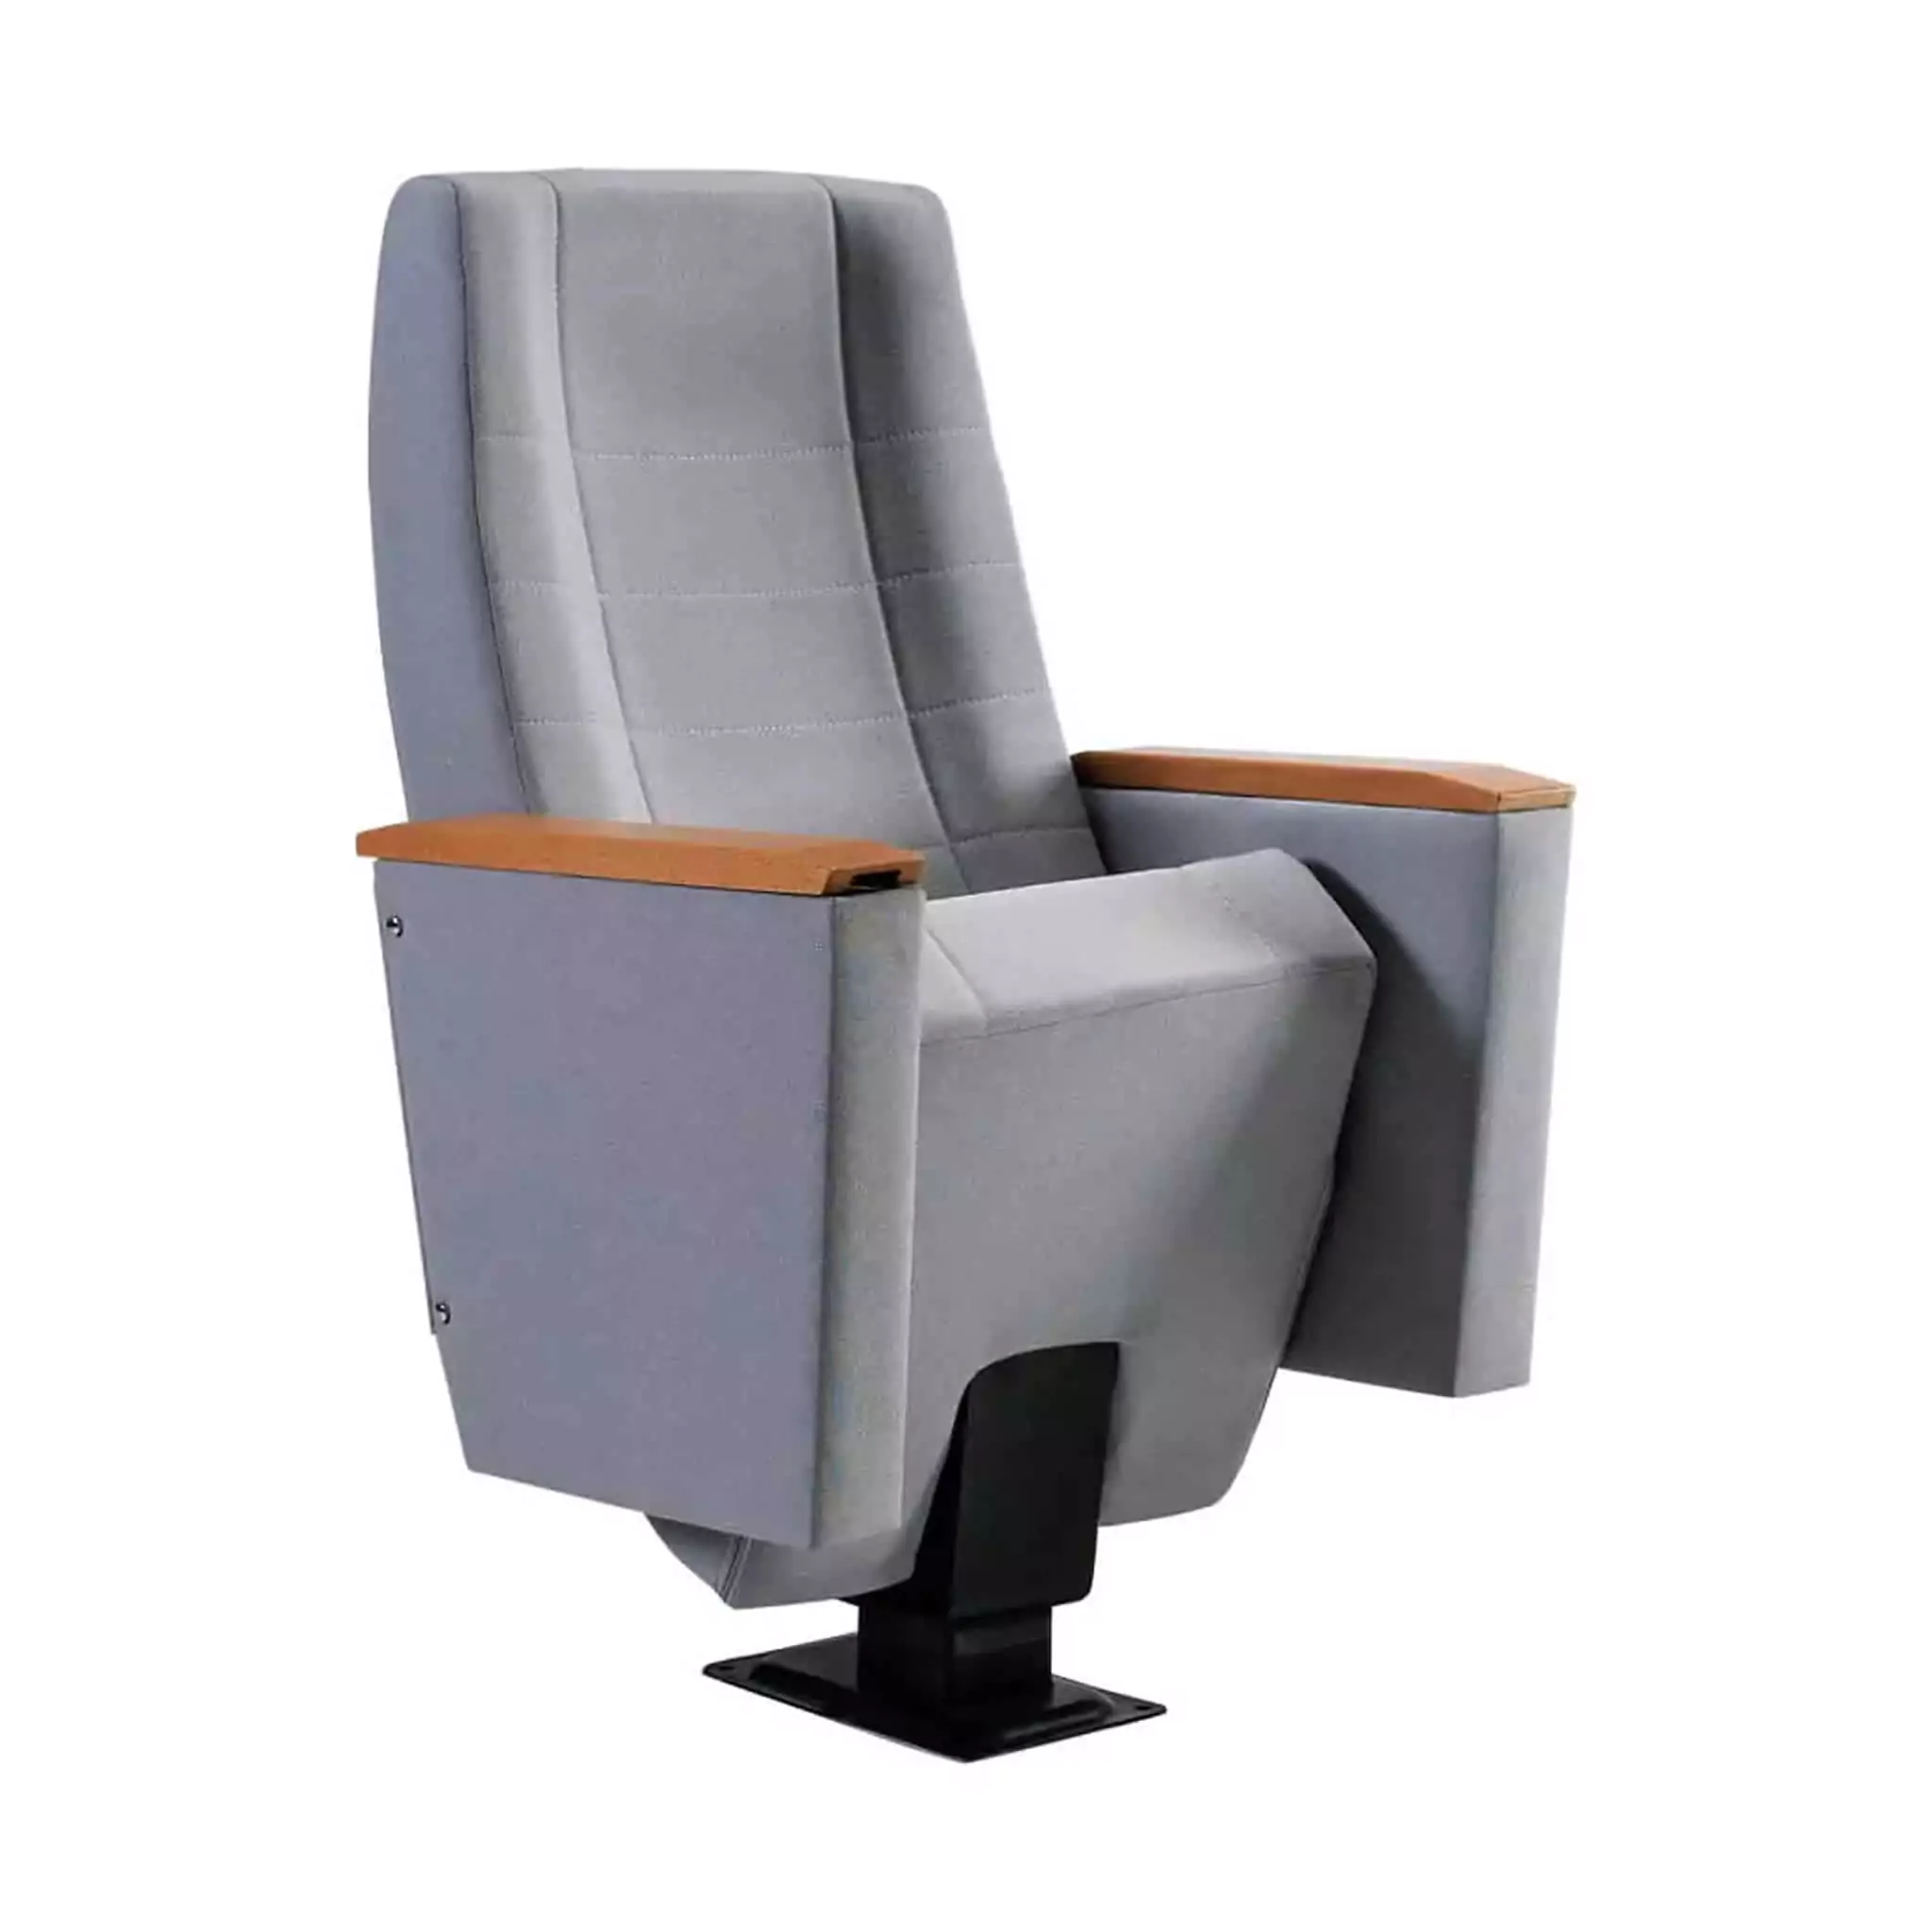 Seat Model: AQUAMARINE Image